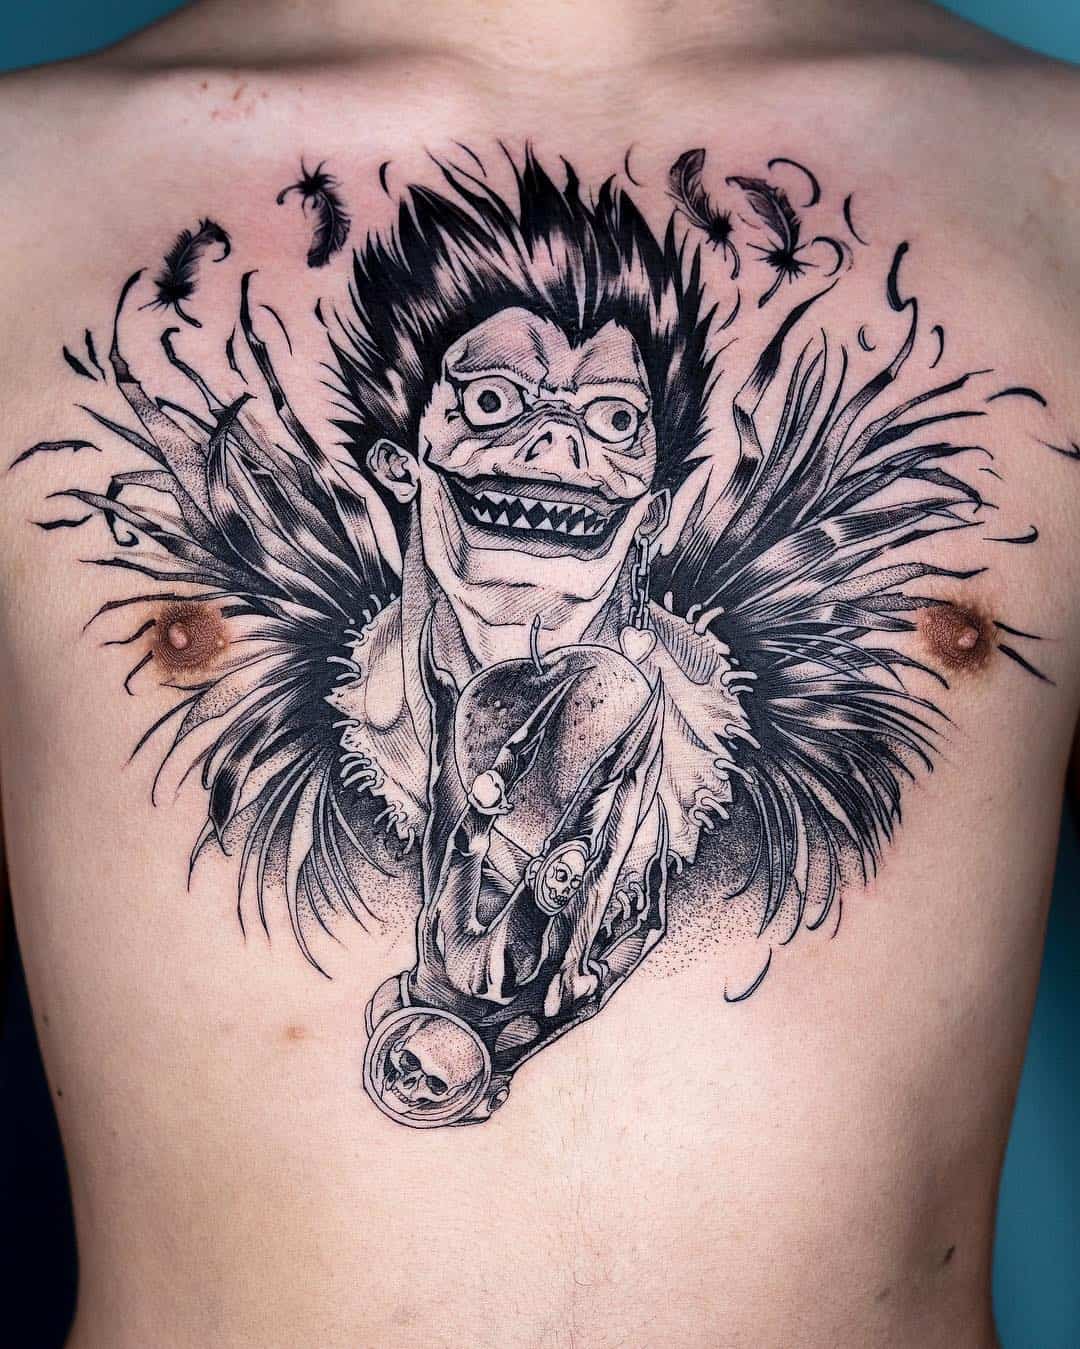 Tattoo artist Oozy